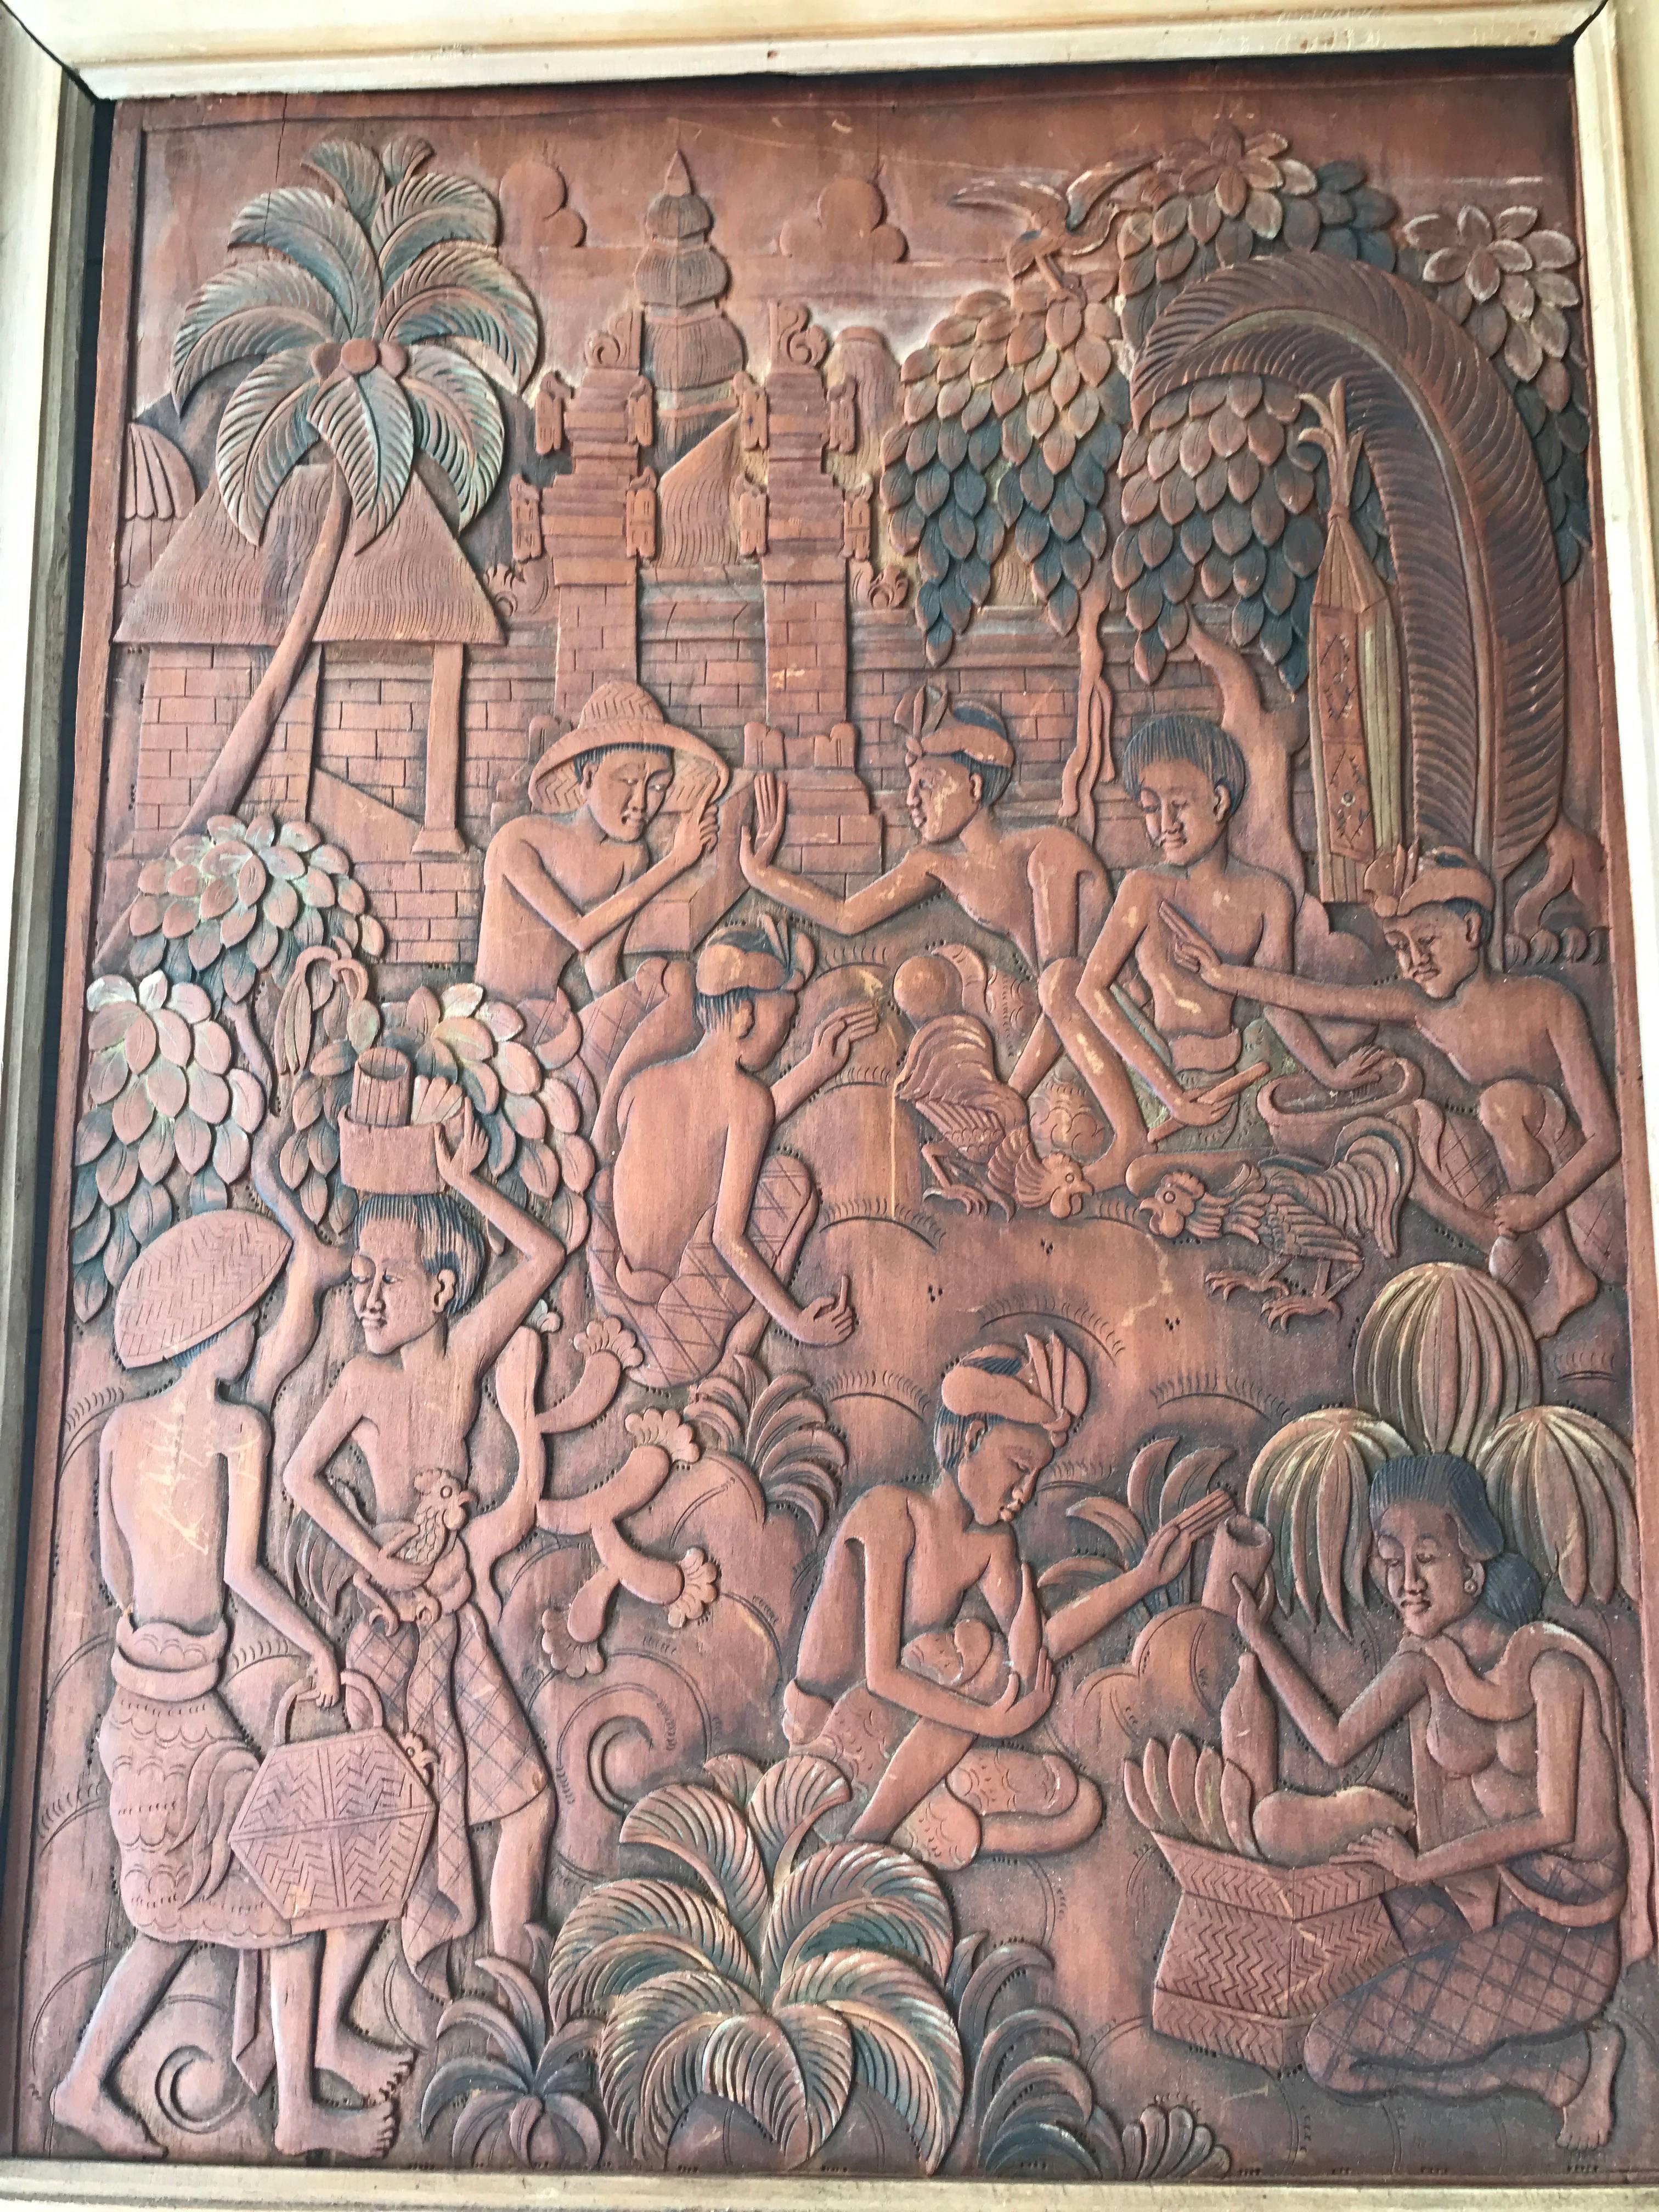 Geschnitzte Wandtafel in Museumsqualität in einem Holzrahmen.

Hahnenkämpfe sind eine beliebte Art der lokalen Unterhaltung auf Bali. Sie werden oft als Reinigungszeremonien abgehalten, um ein Dorf von bösen magischen Einflüssen zu befreien. Der